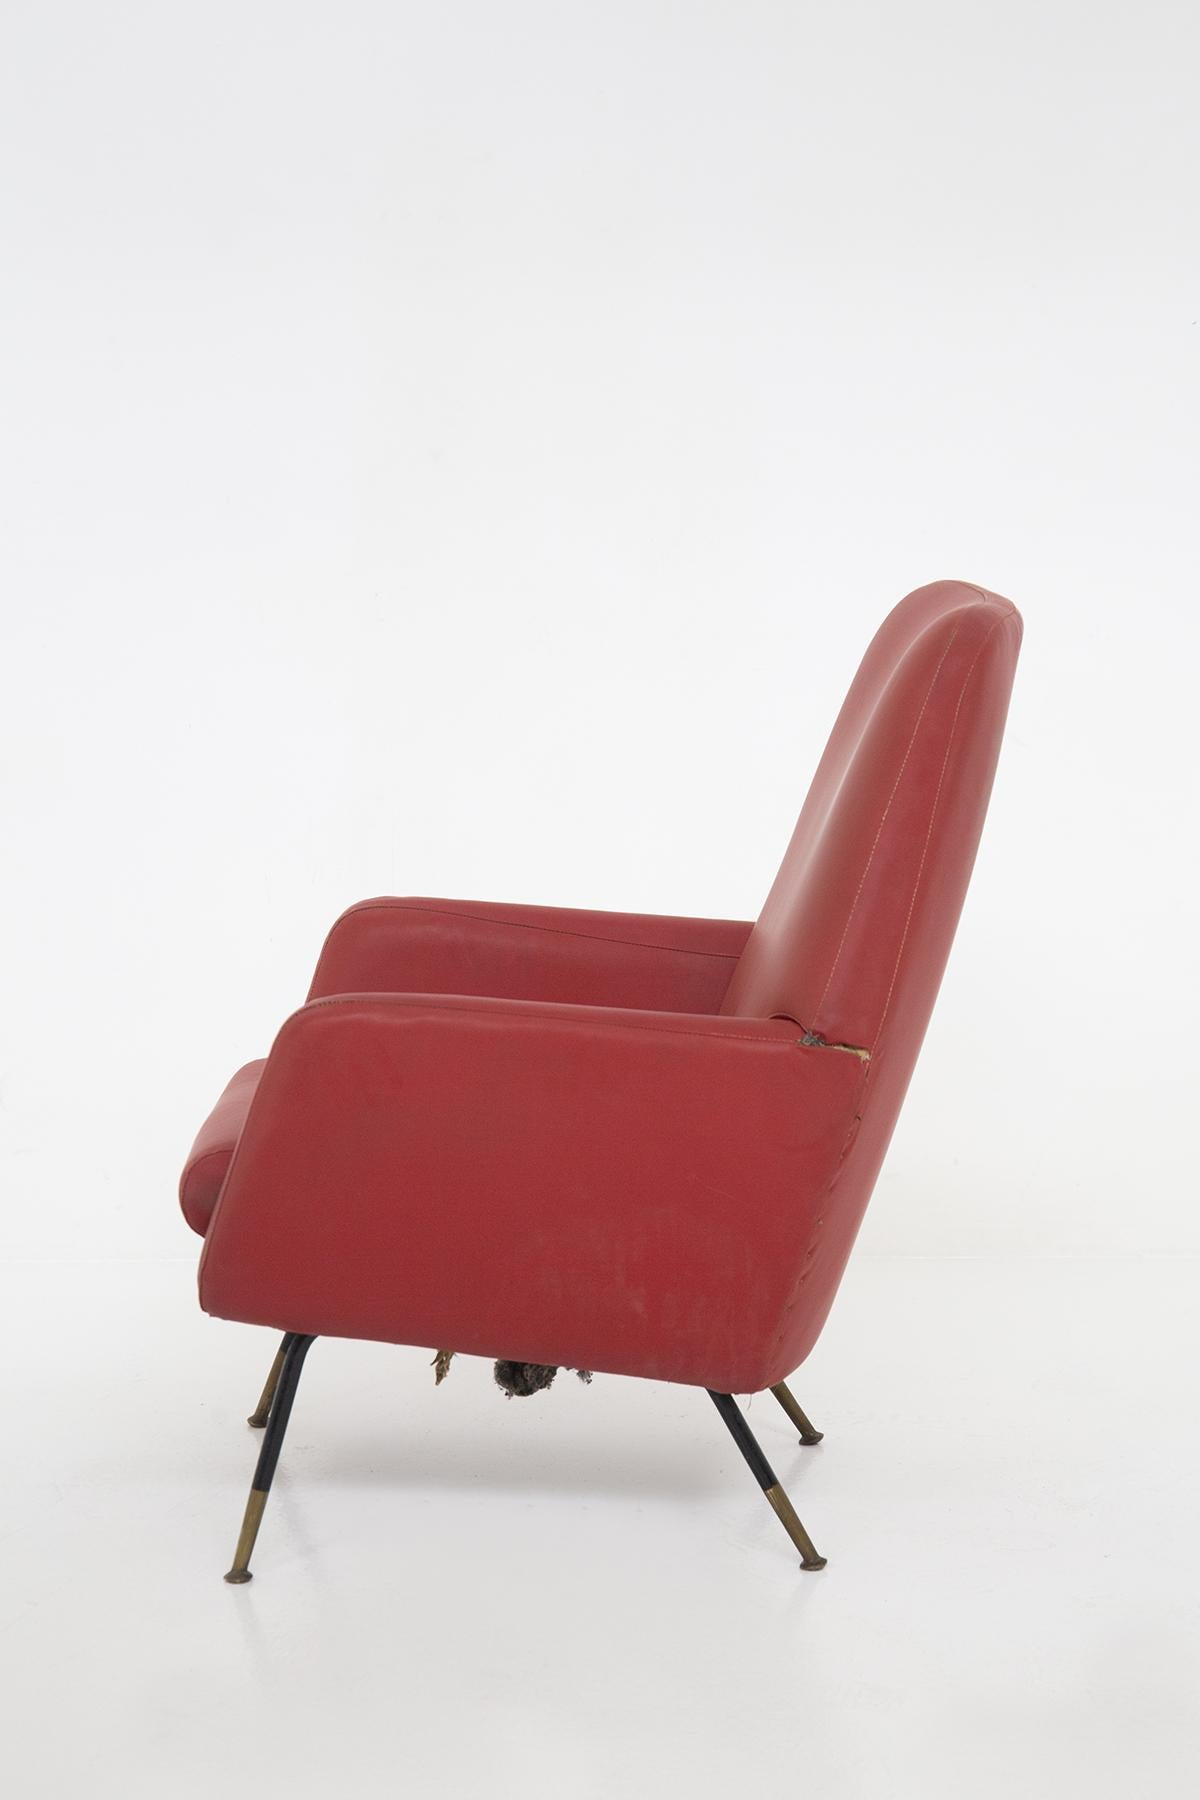 Wunderschönes Paar Ledersessel aus den 1970er Jahren von Gastone Rinaldi, feine italienische Manufaktur.
Die Sessel haben vier Stützfüße aus Eisen, die sehr haltbar sind. Die Form ist leicht offen und die Füße sind mit Messing überzogen, was ihnen